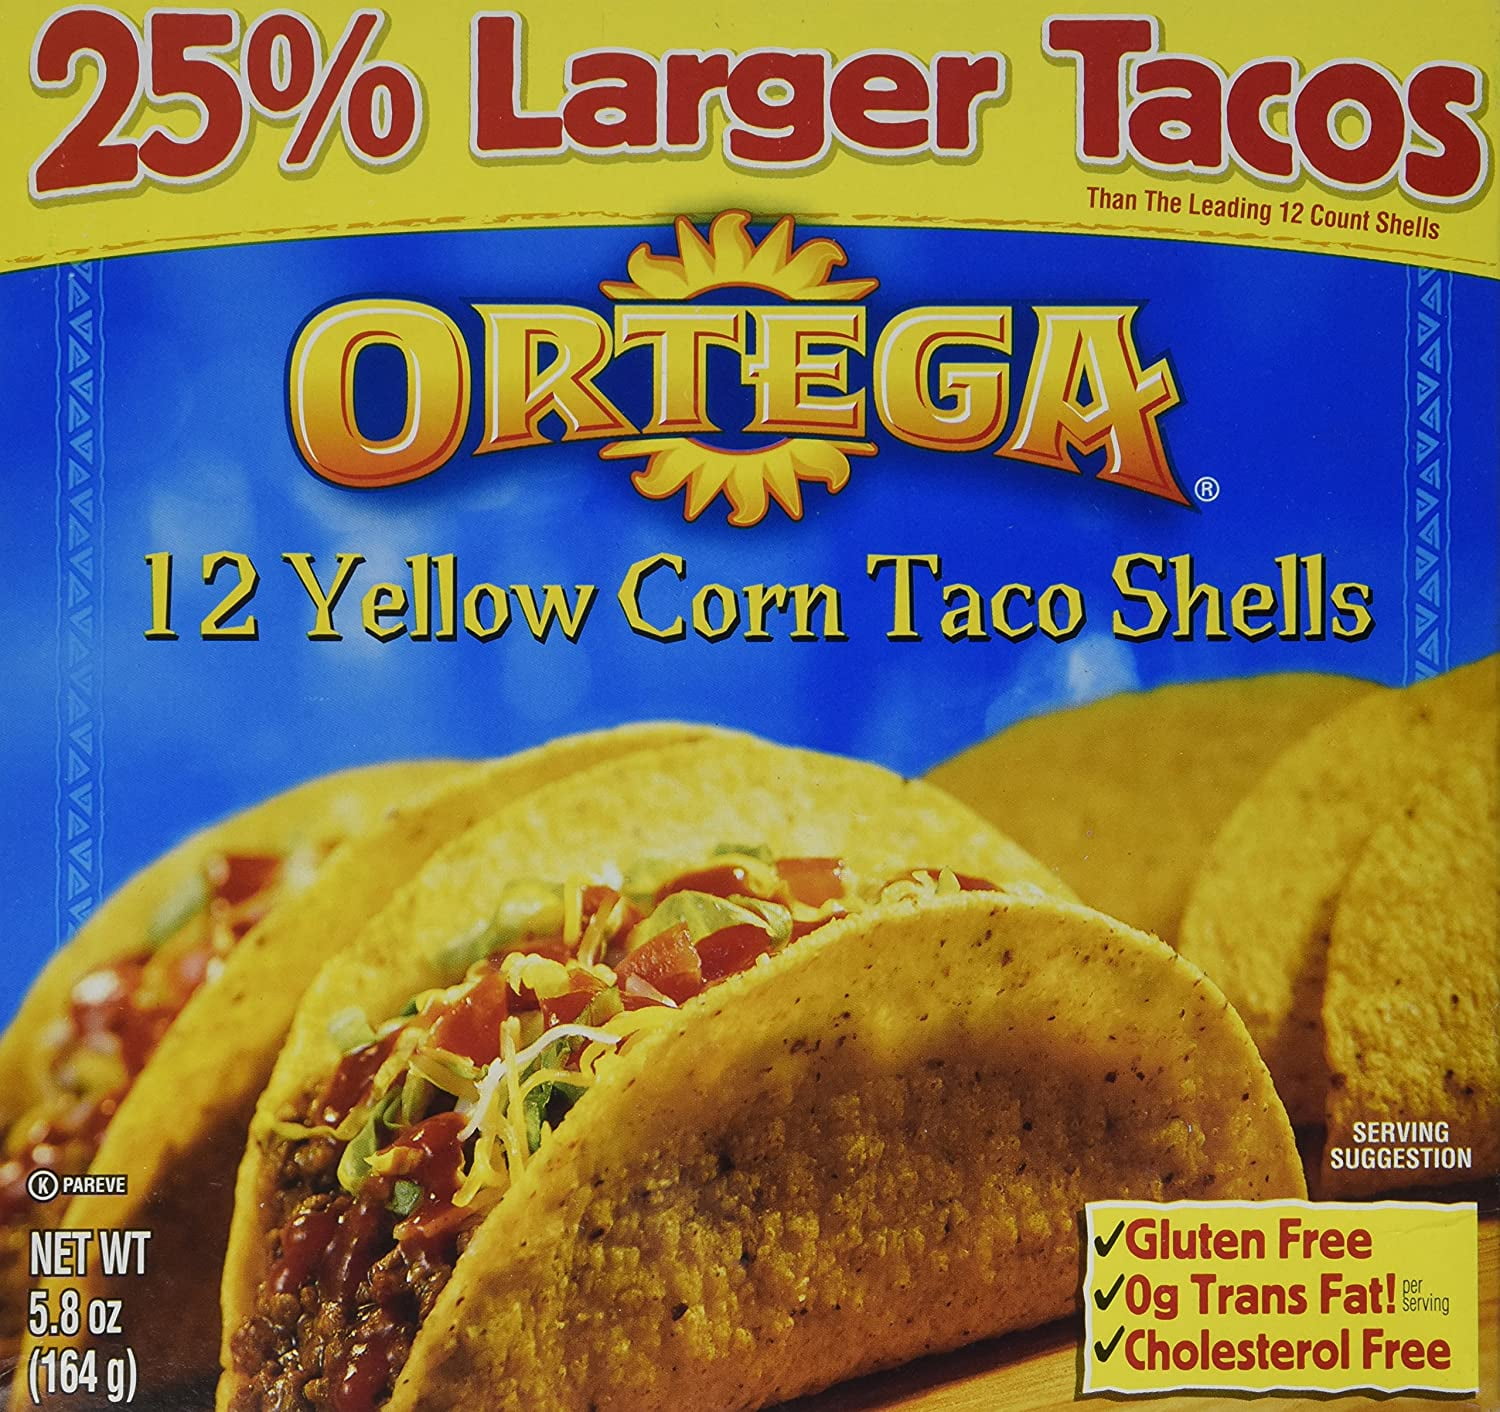 Buy Ortega 12 Yellow Corn Taco Shells 5.8 oz at Walmart.com.